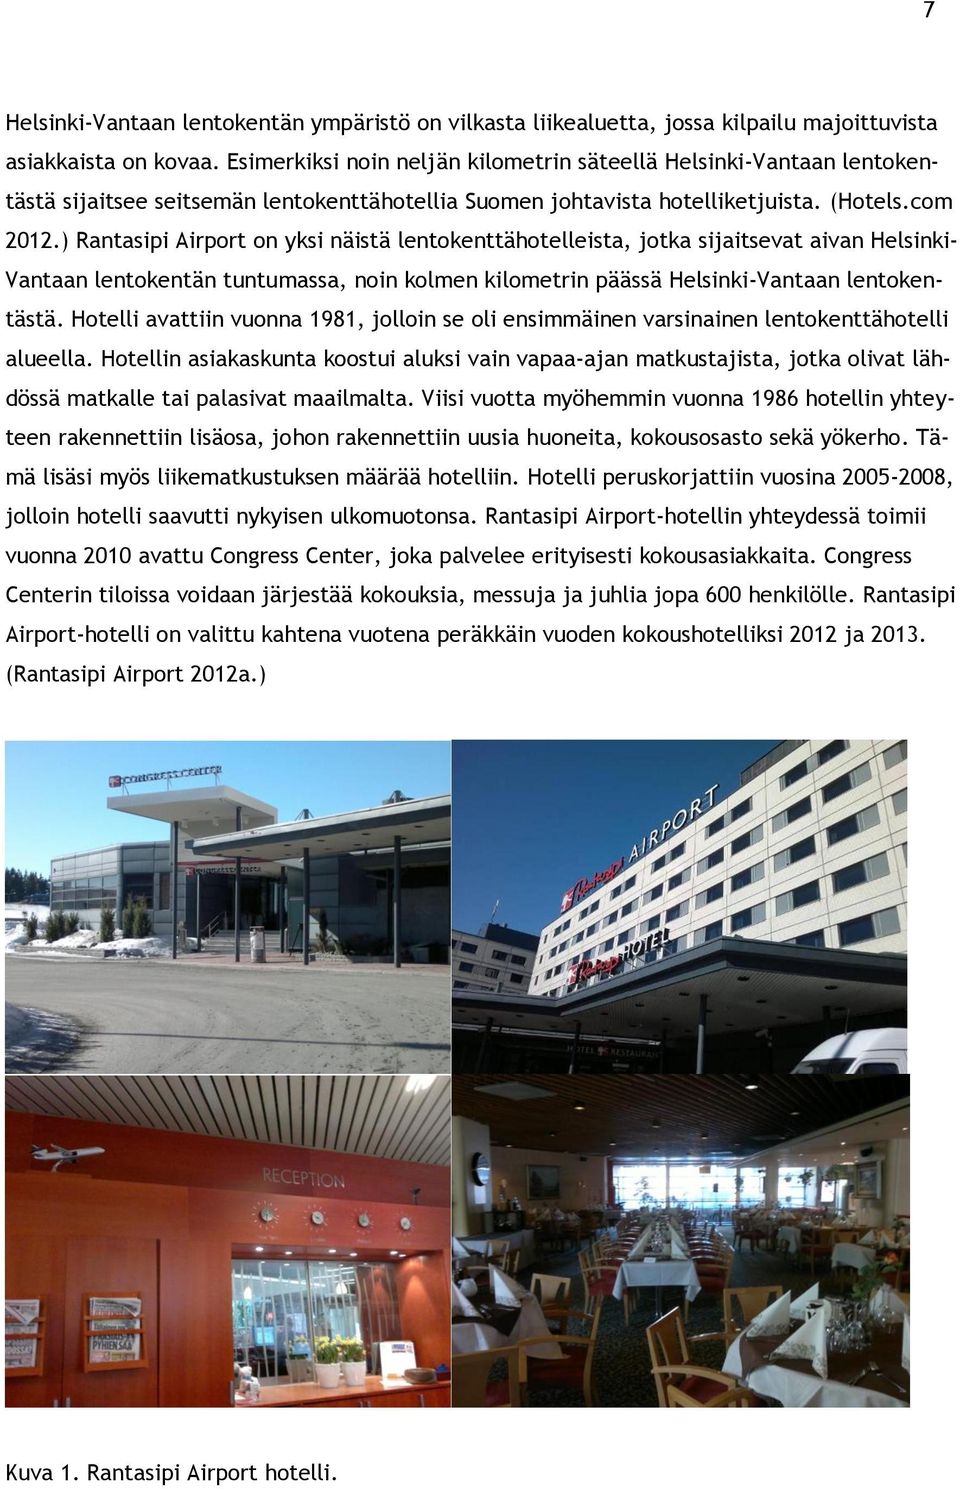 ) Rantasipi Airport on yksi näistä lentokenttähotelleista, jotka sijaitsevat aivan Helsinki- Vantaan lentokentän tuntumassa, noin kolmen kilometrin päässä Helsinki-Vantaan lentokentästä.